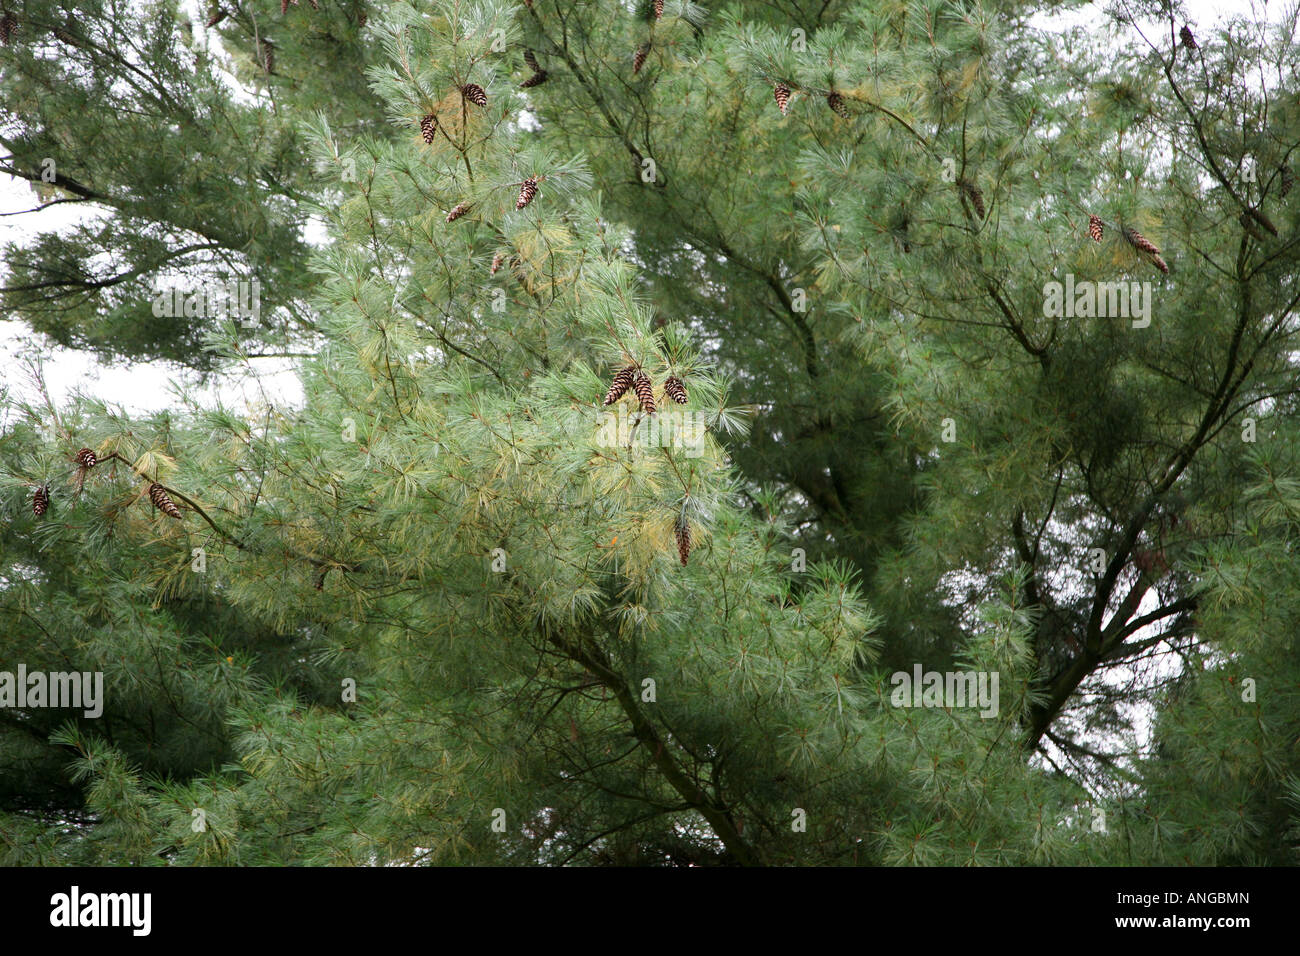 pine, cones in tree Stock Photo